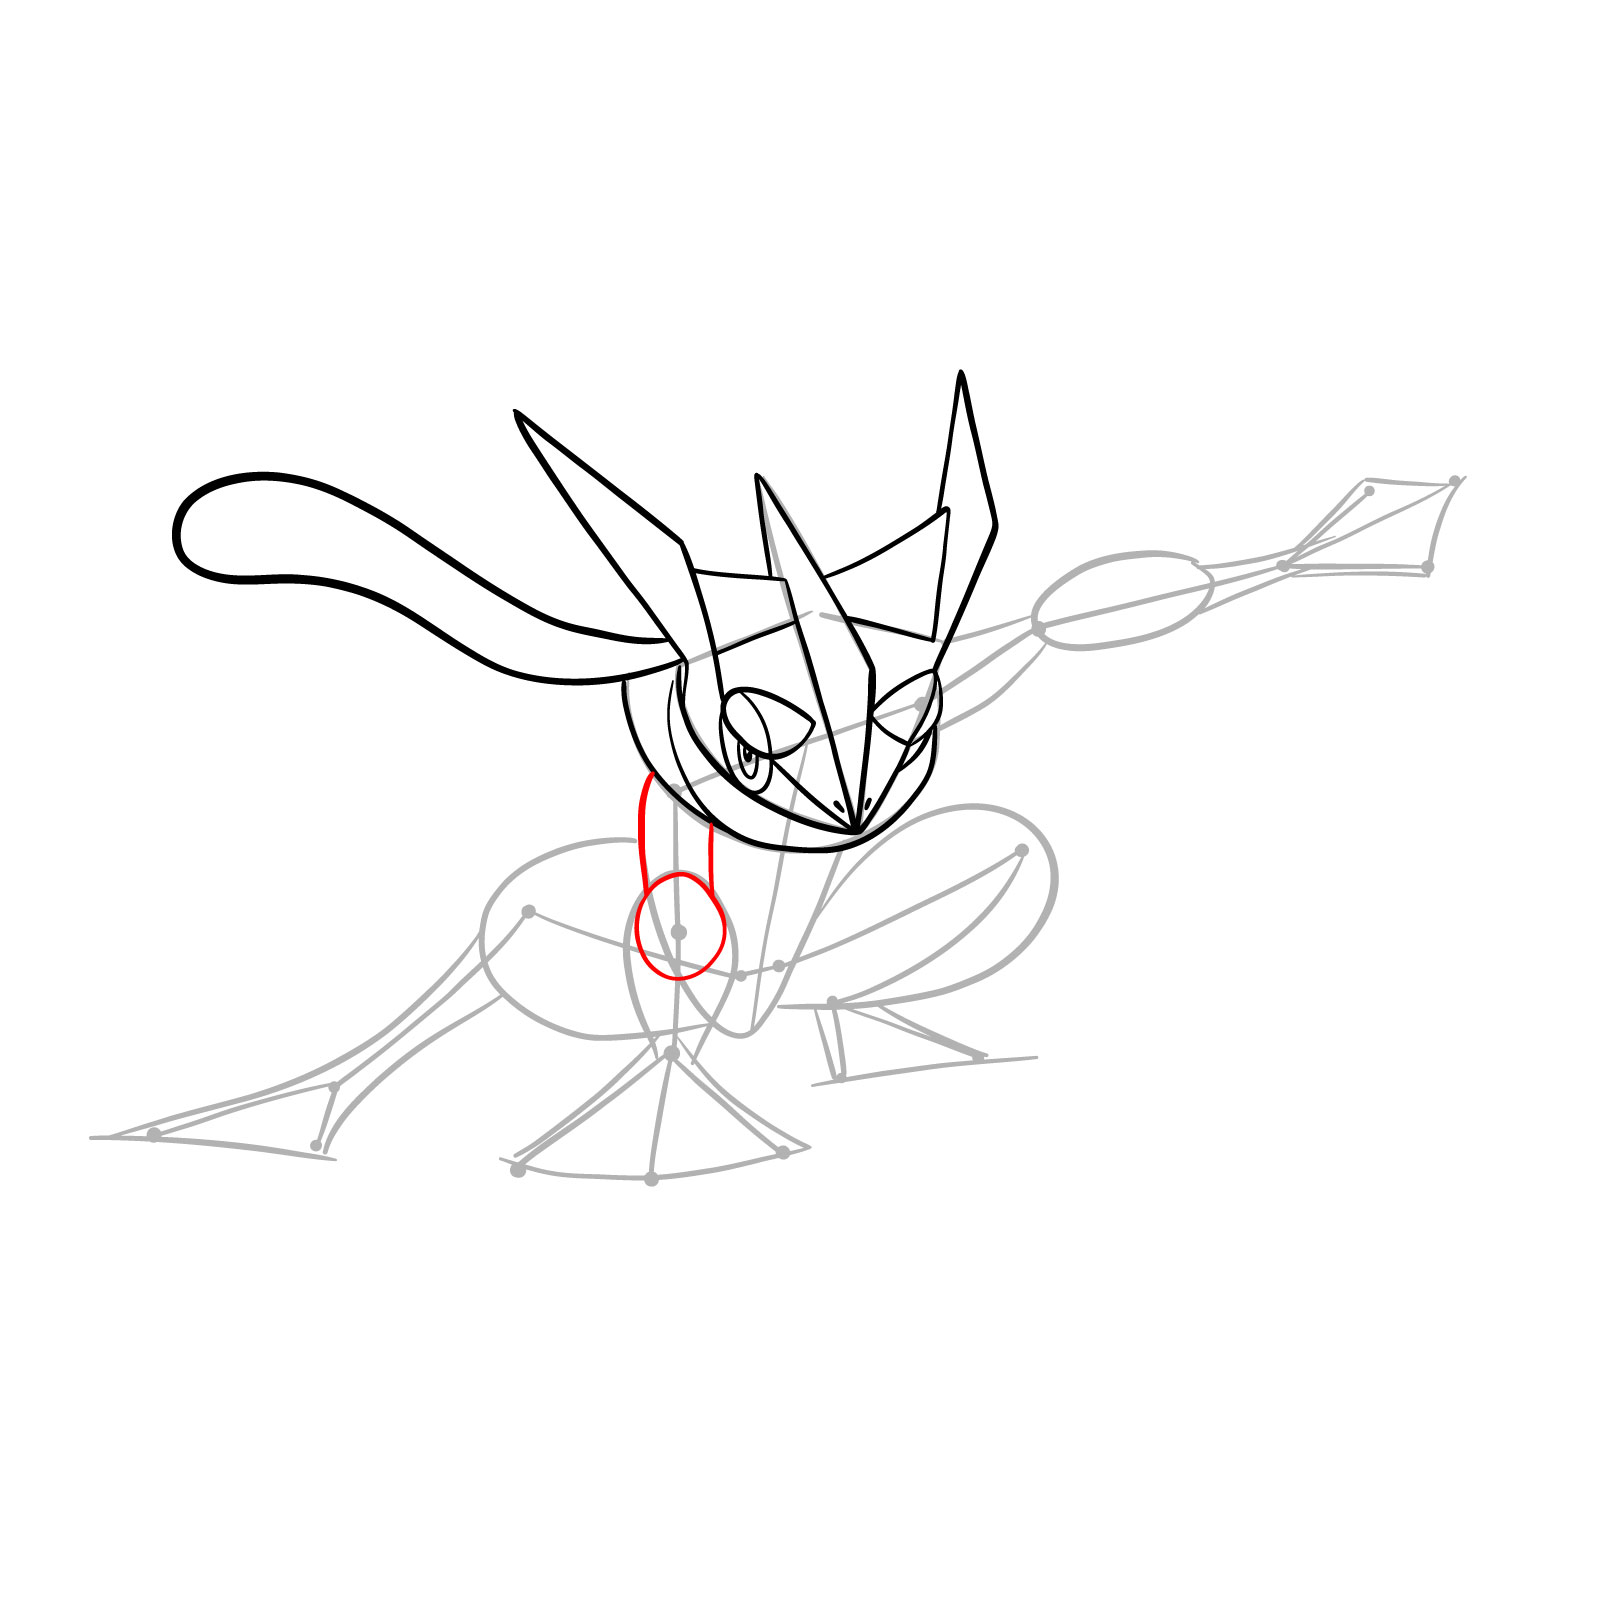 How to draw Greninja Pokemon - step 14